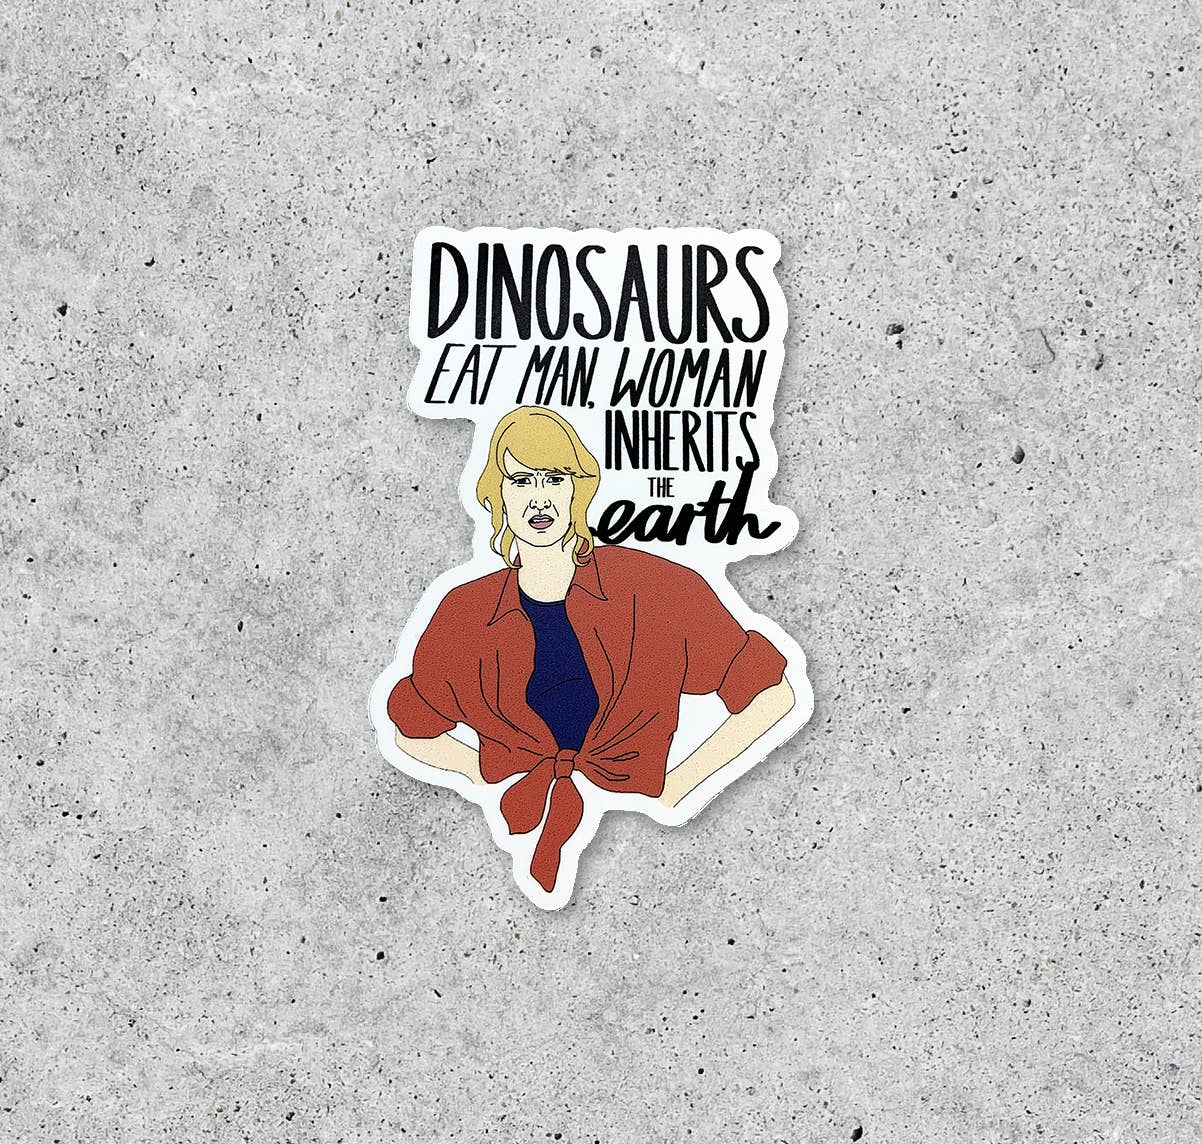 Dinosaurs Eat Man Jurassic Park Sticker